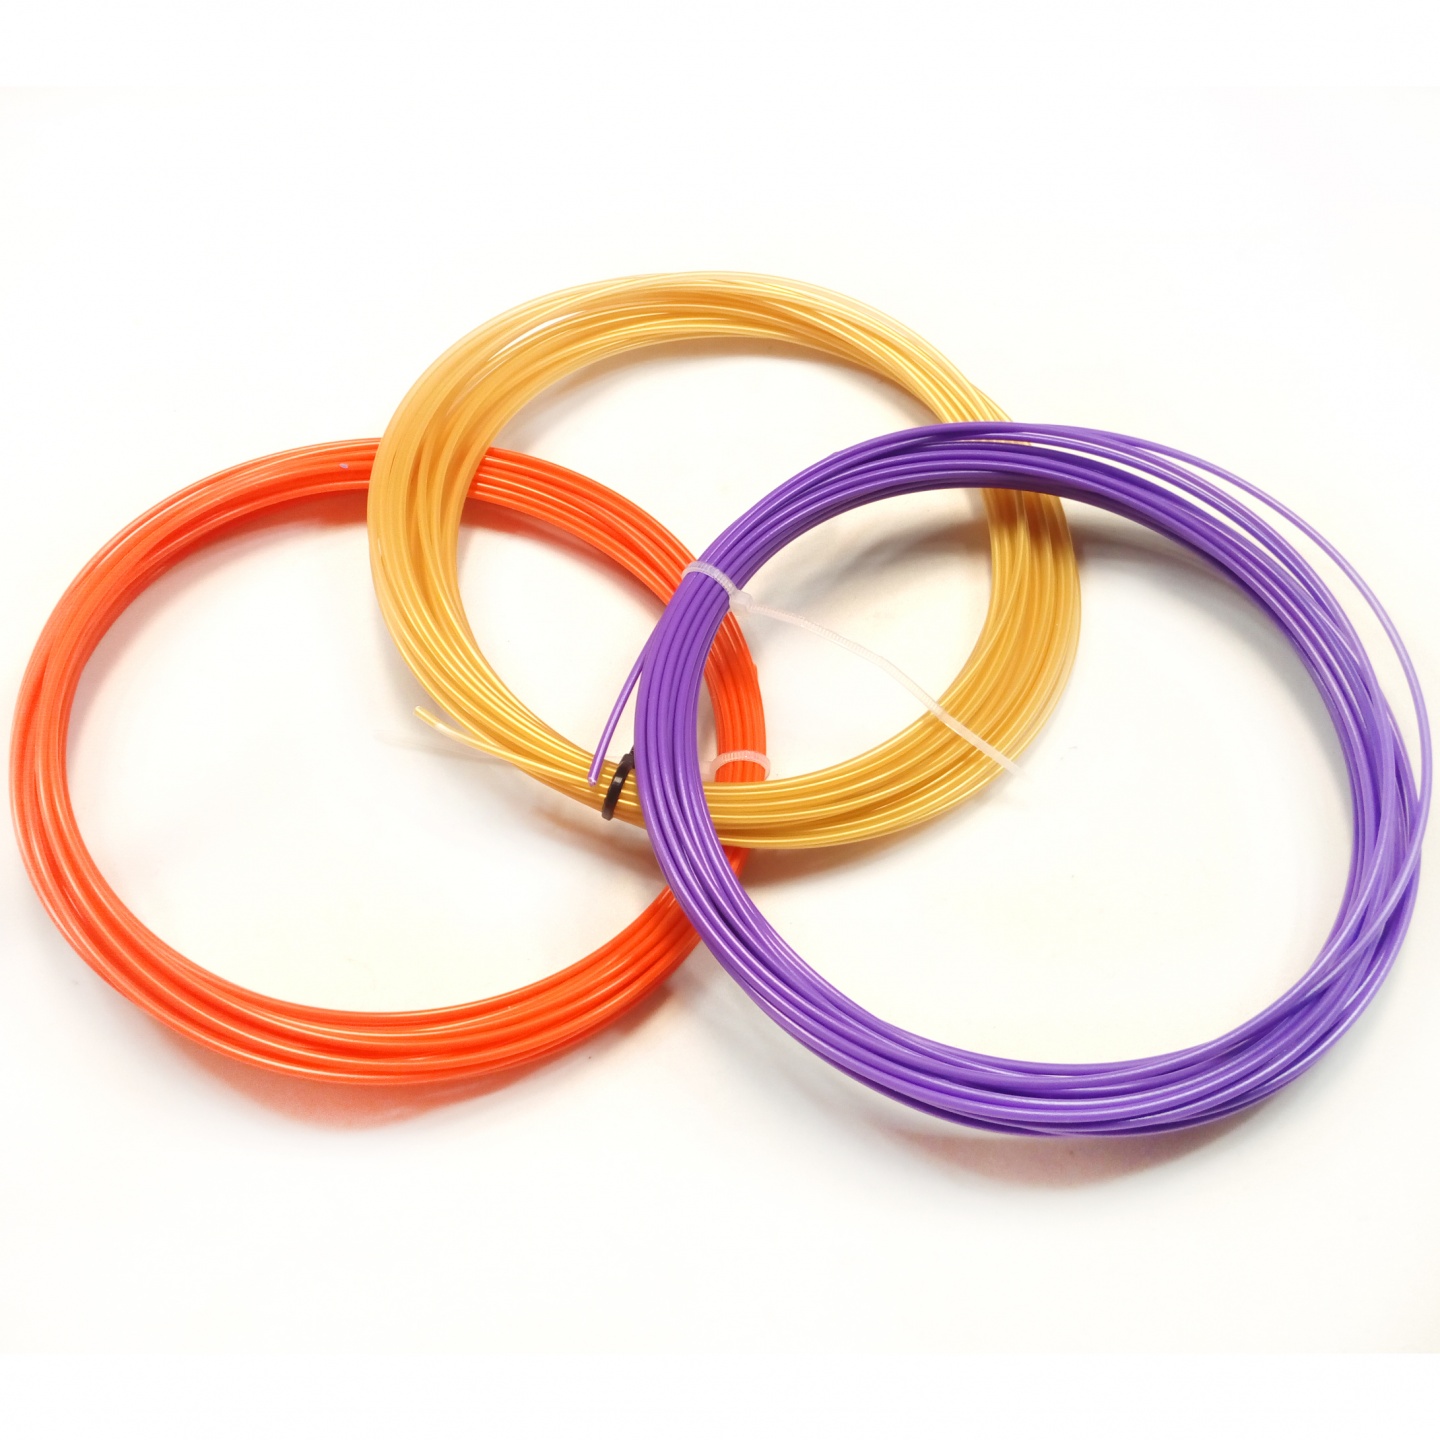 Комплект ABS-пластика Tiger3D 1.75 мм для 3D ручек (оранжевый, золотой, пурпурный), по 10 м каждого цвета